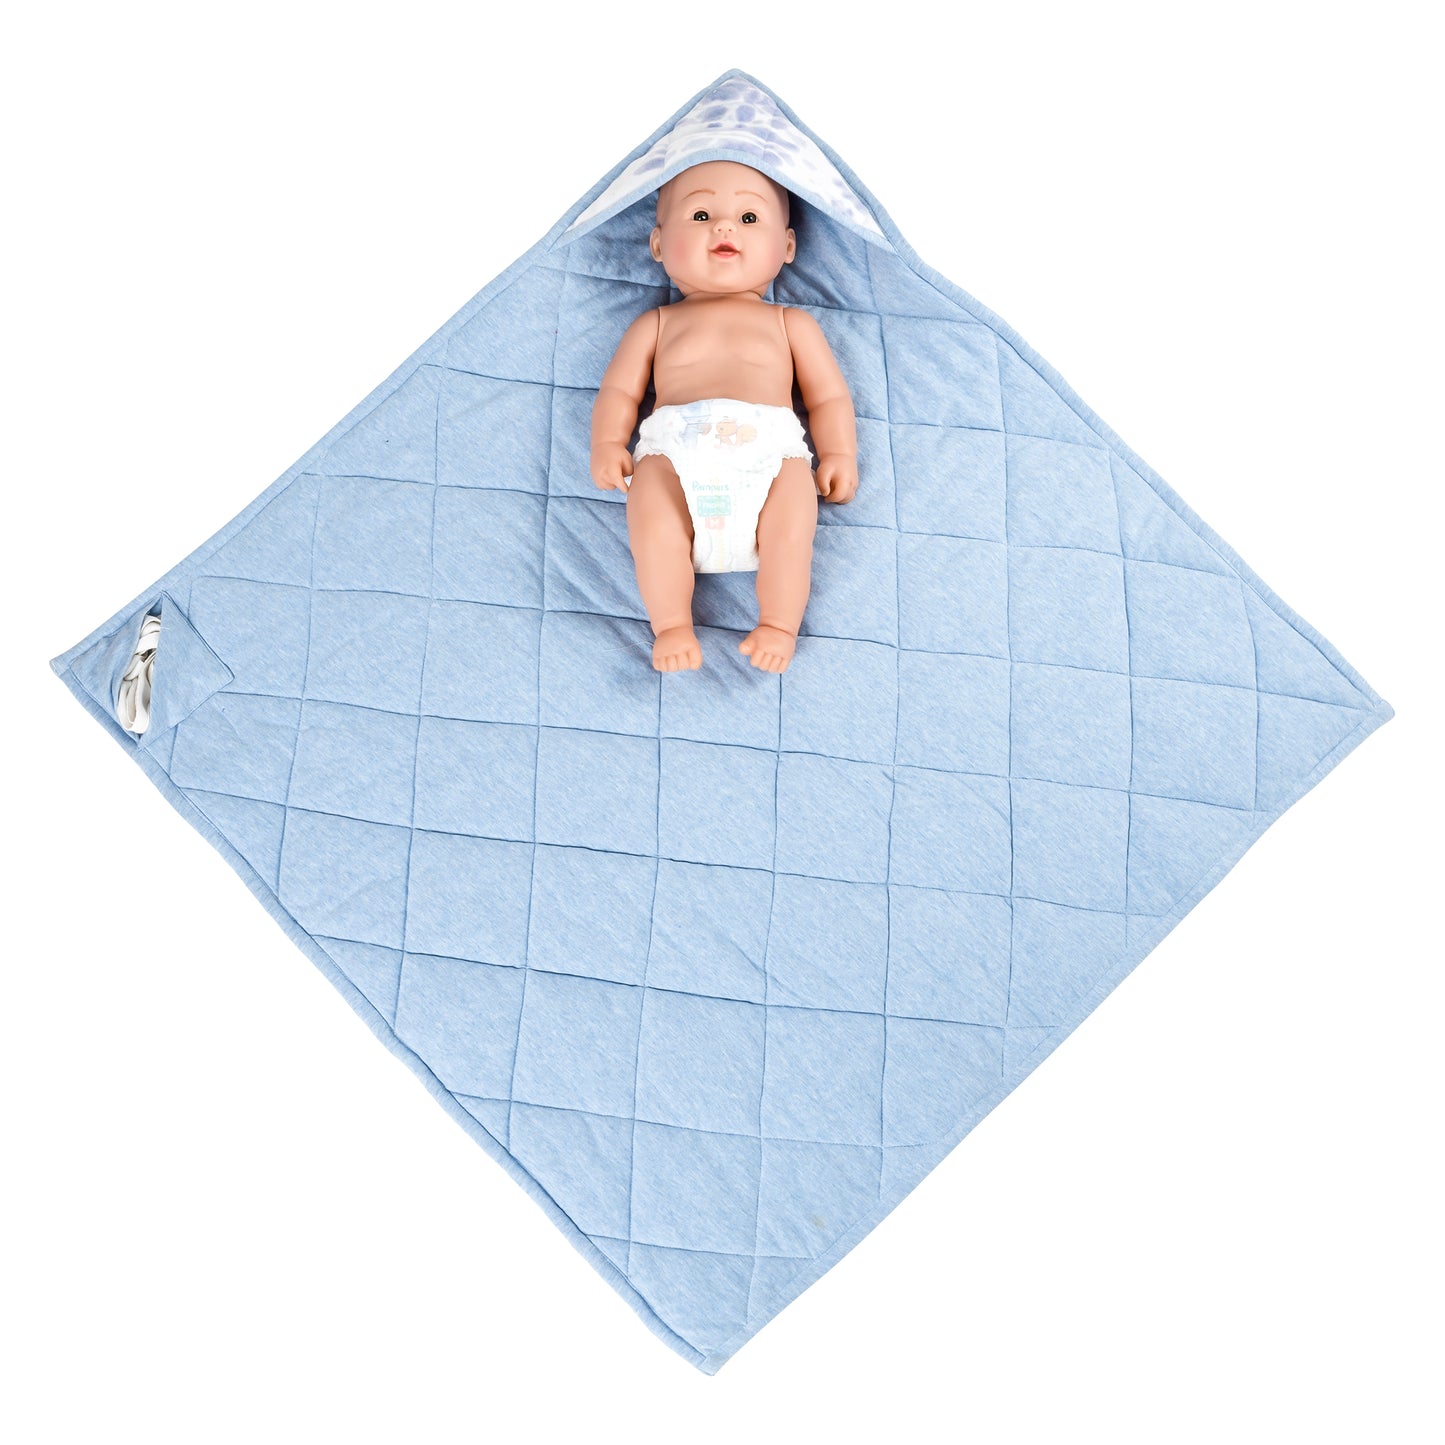 NUEVOSGHAR Cotton Tie & Dye Super Soft Warm Hooded Baby Blanket Wrapper (0-12 Months)_ Blue